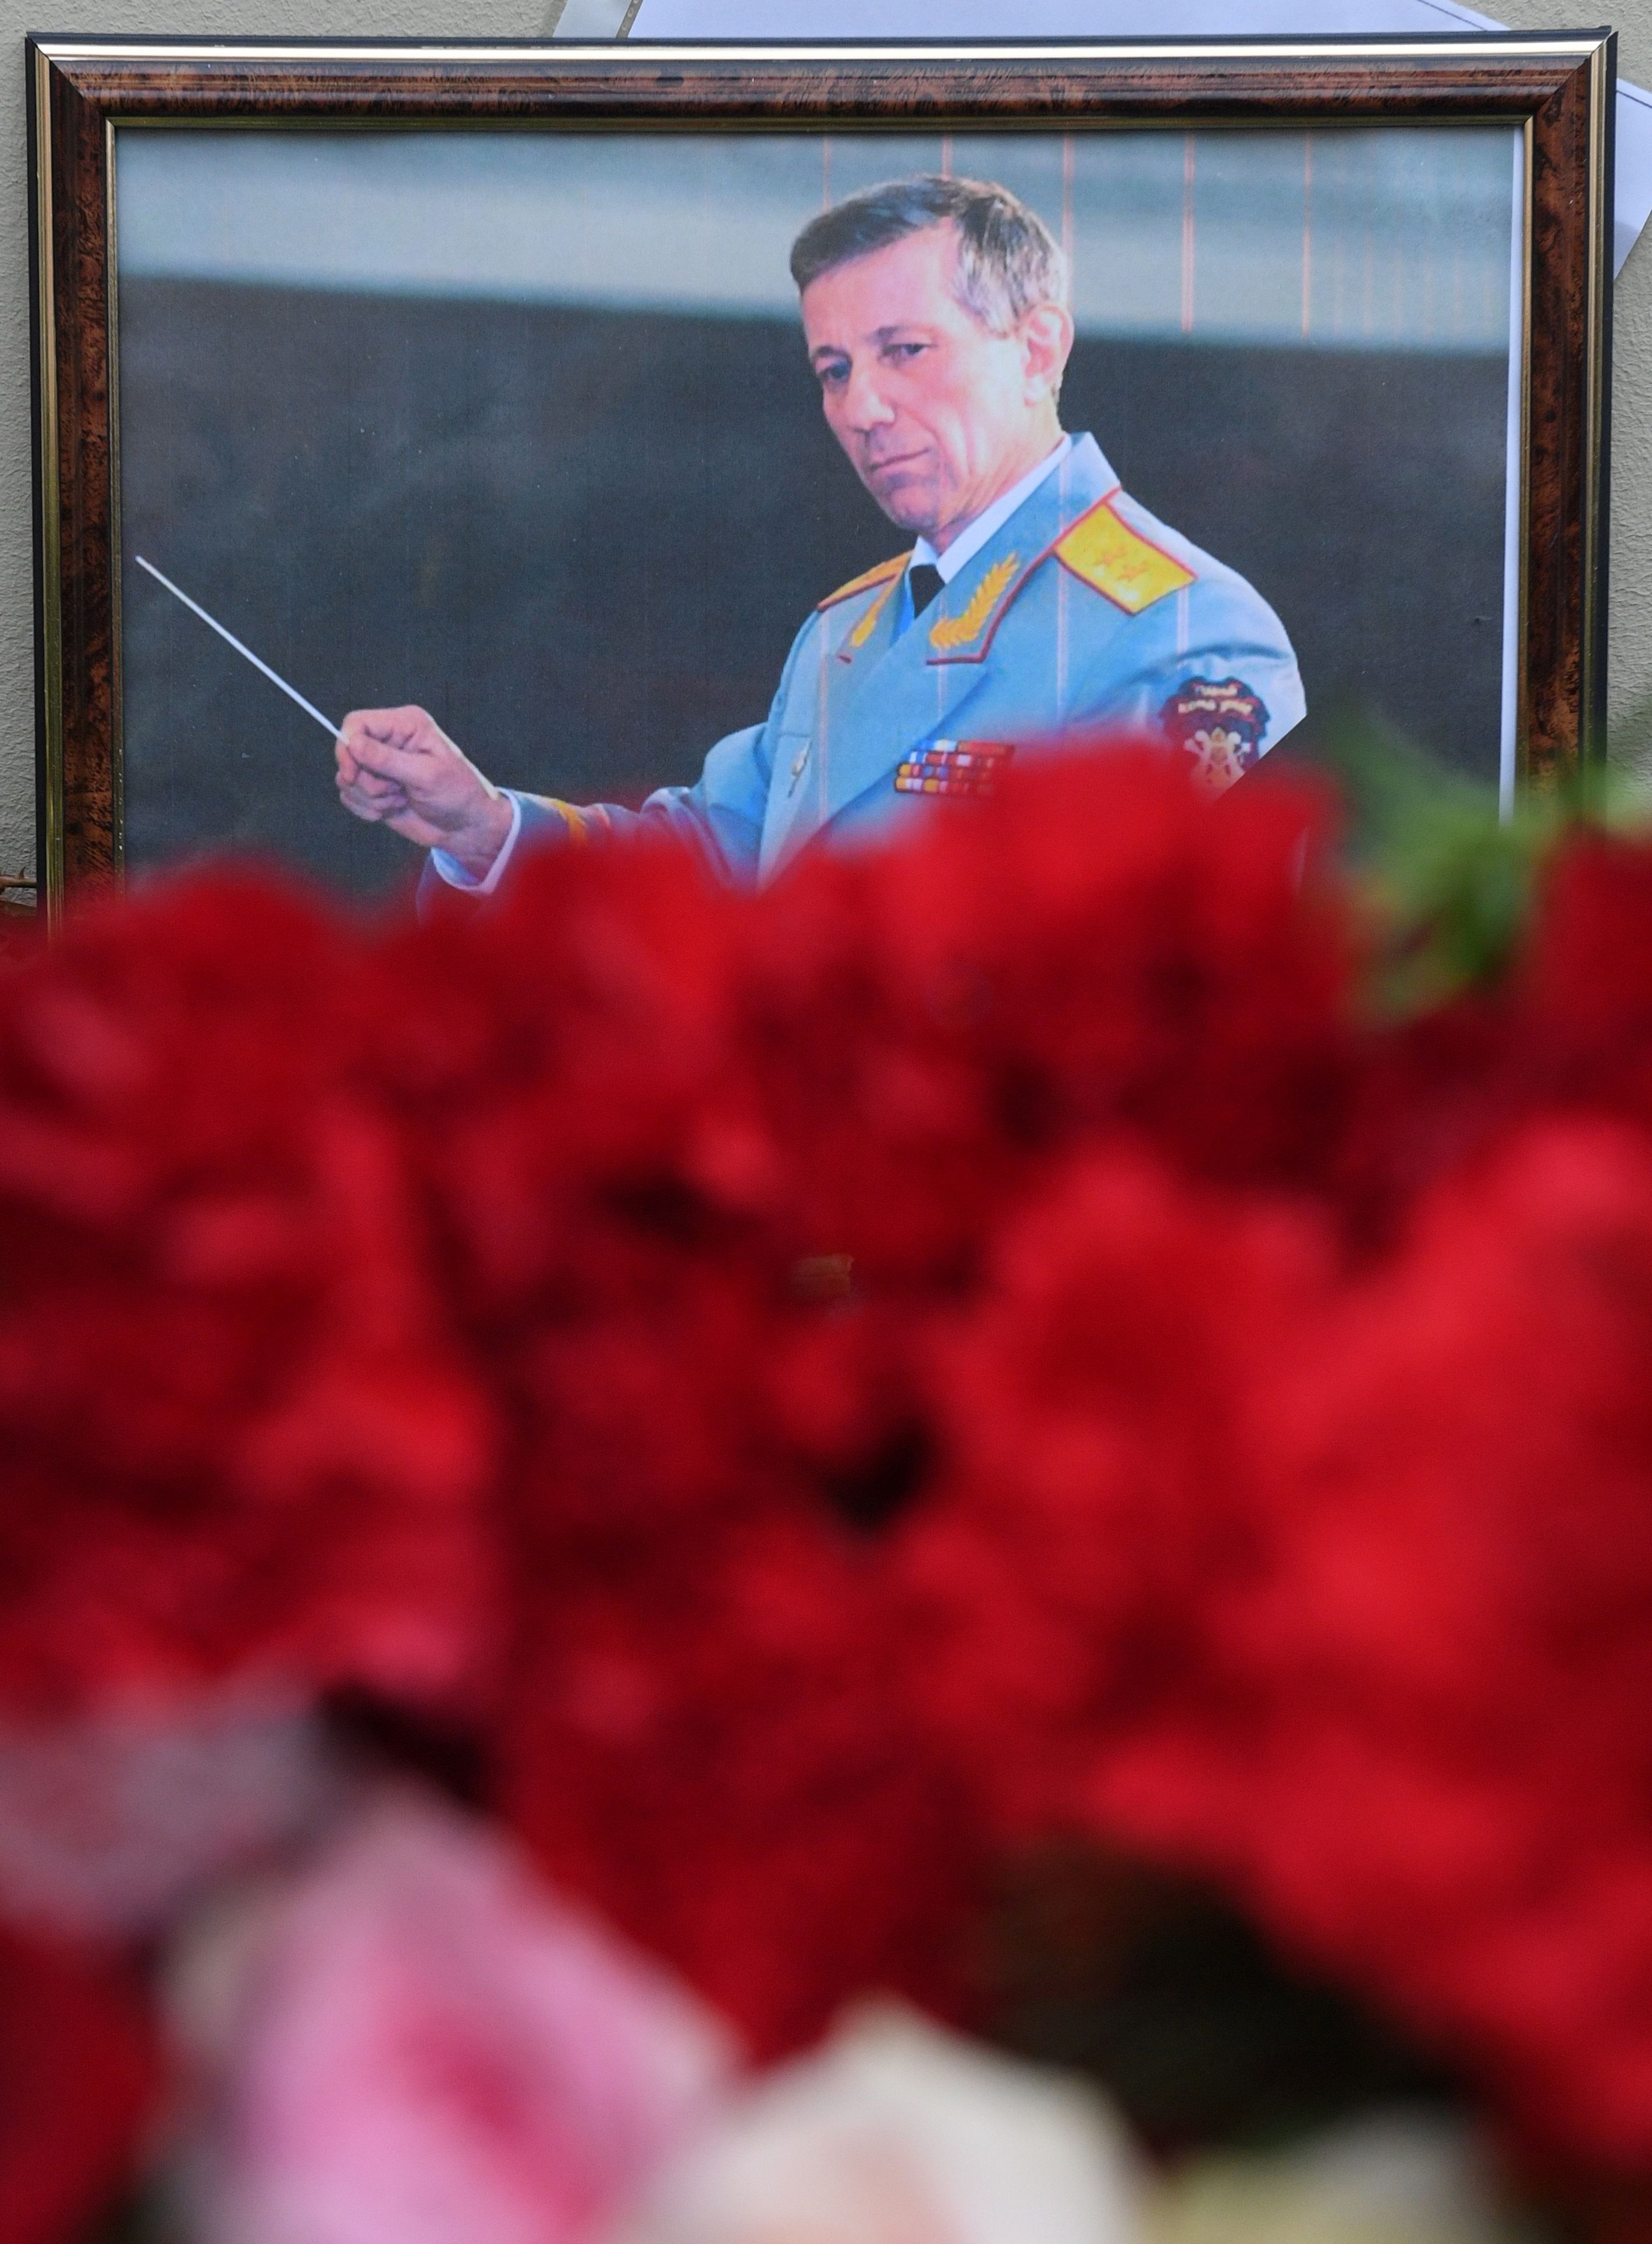 صورة رئيس فرقة اليكسندروف الروسية وسط باقة من الزهور تأبينا لروحه على باب مسرح الفرقة